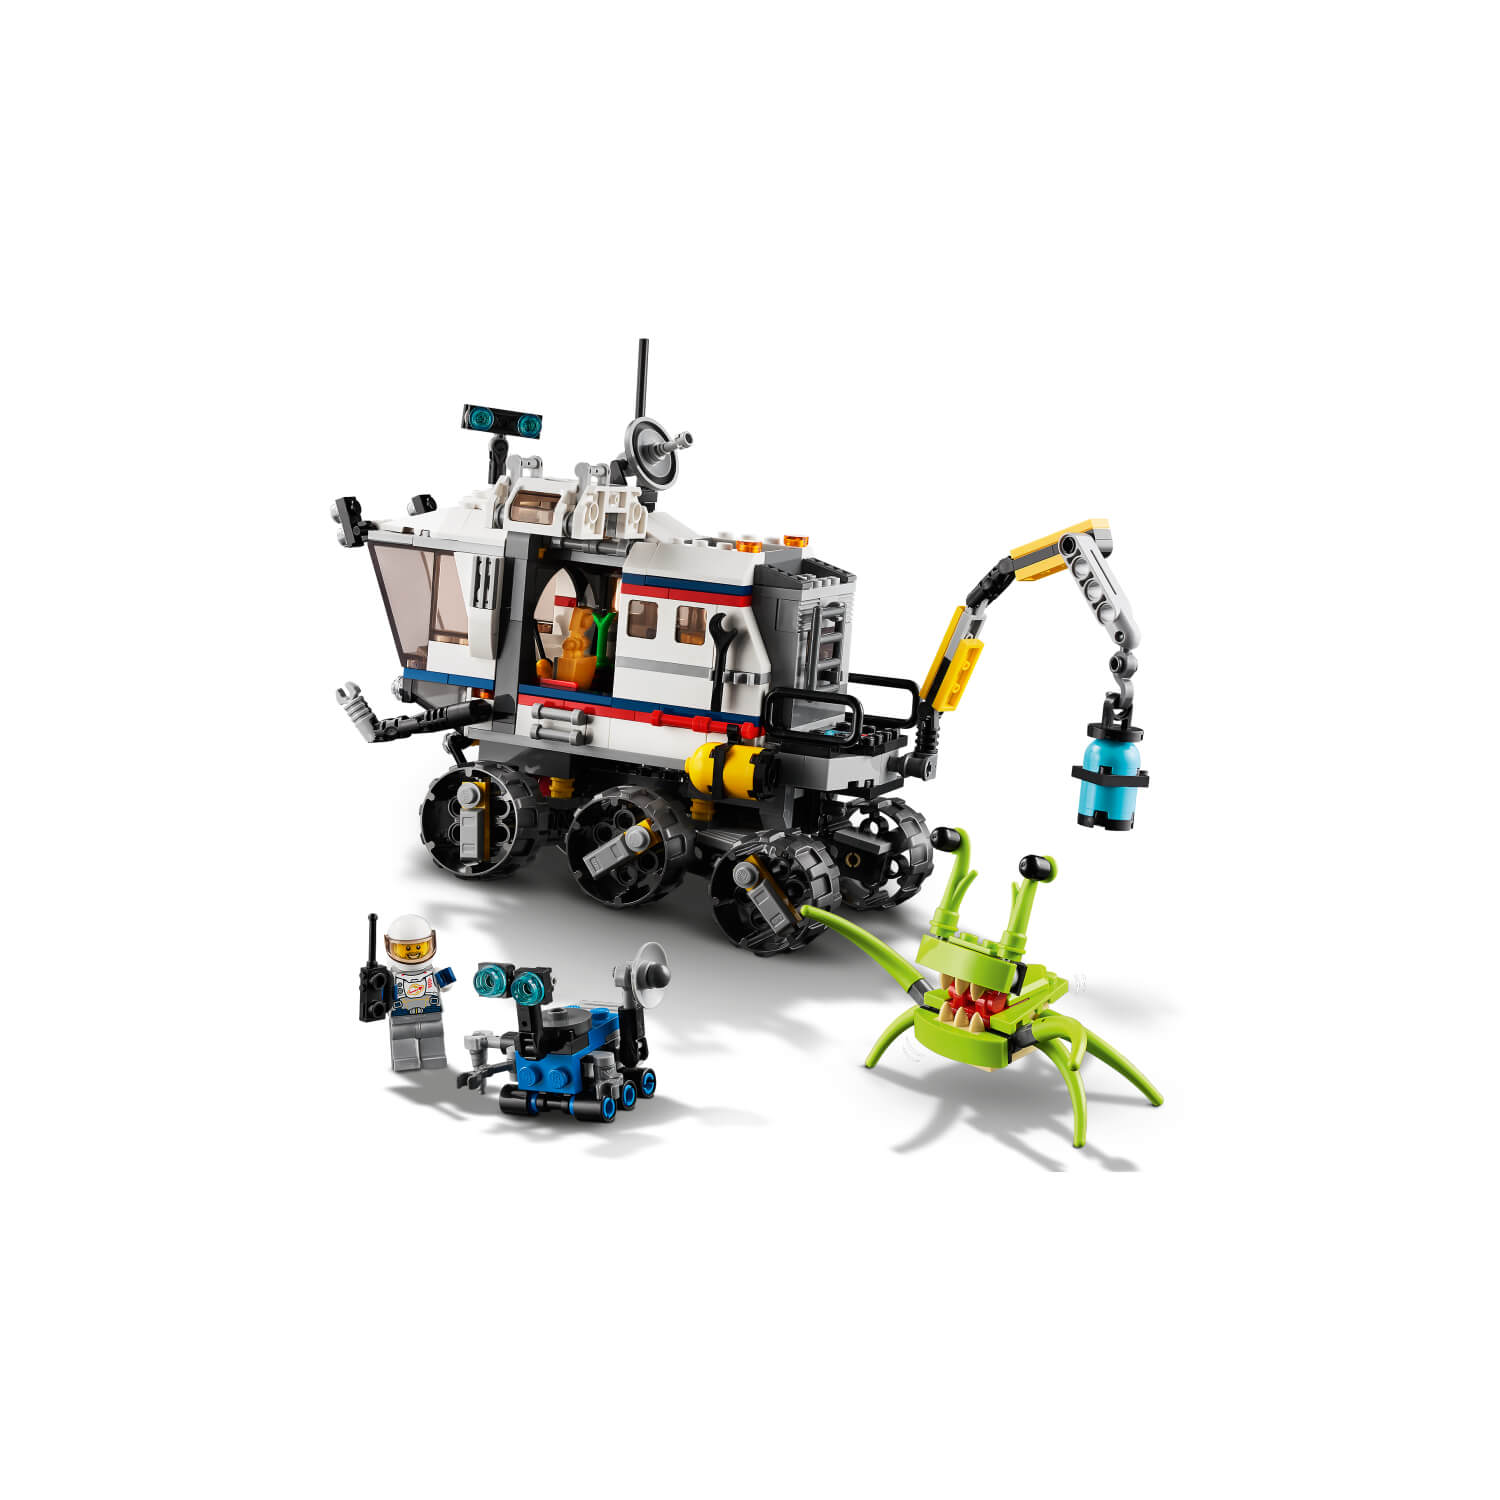 31107 Istraživački svemirski rover